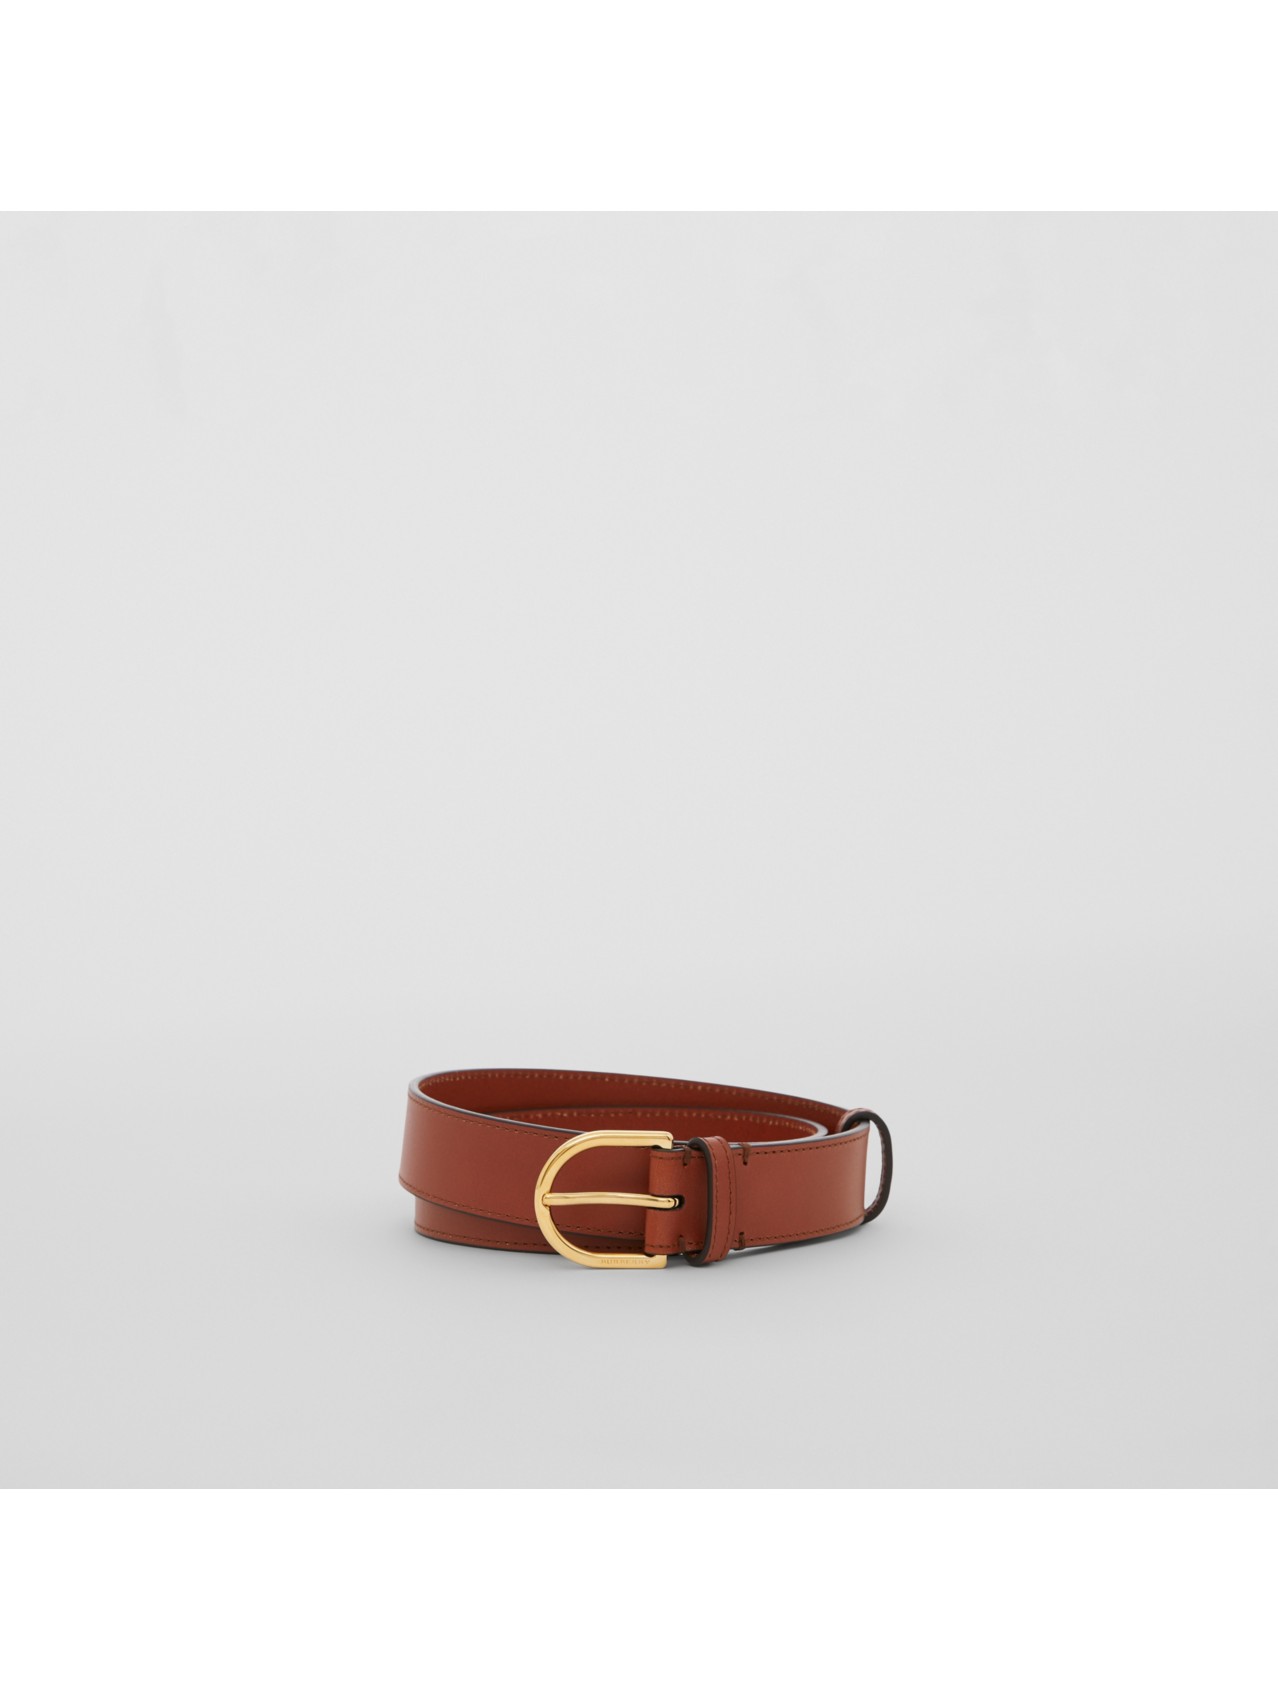 Women’s Belts | Burberry® Official